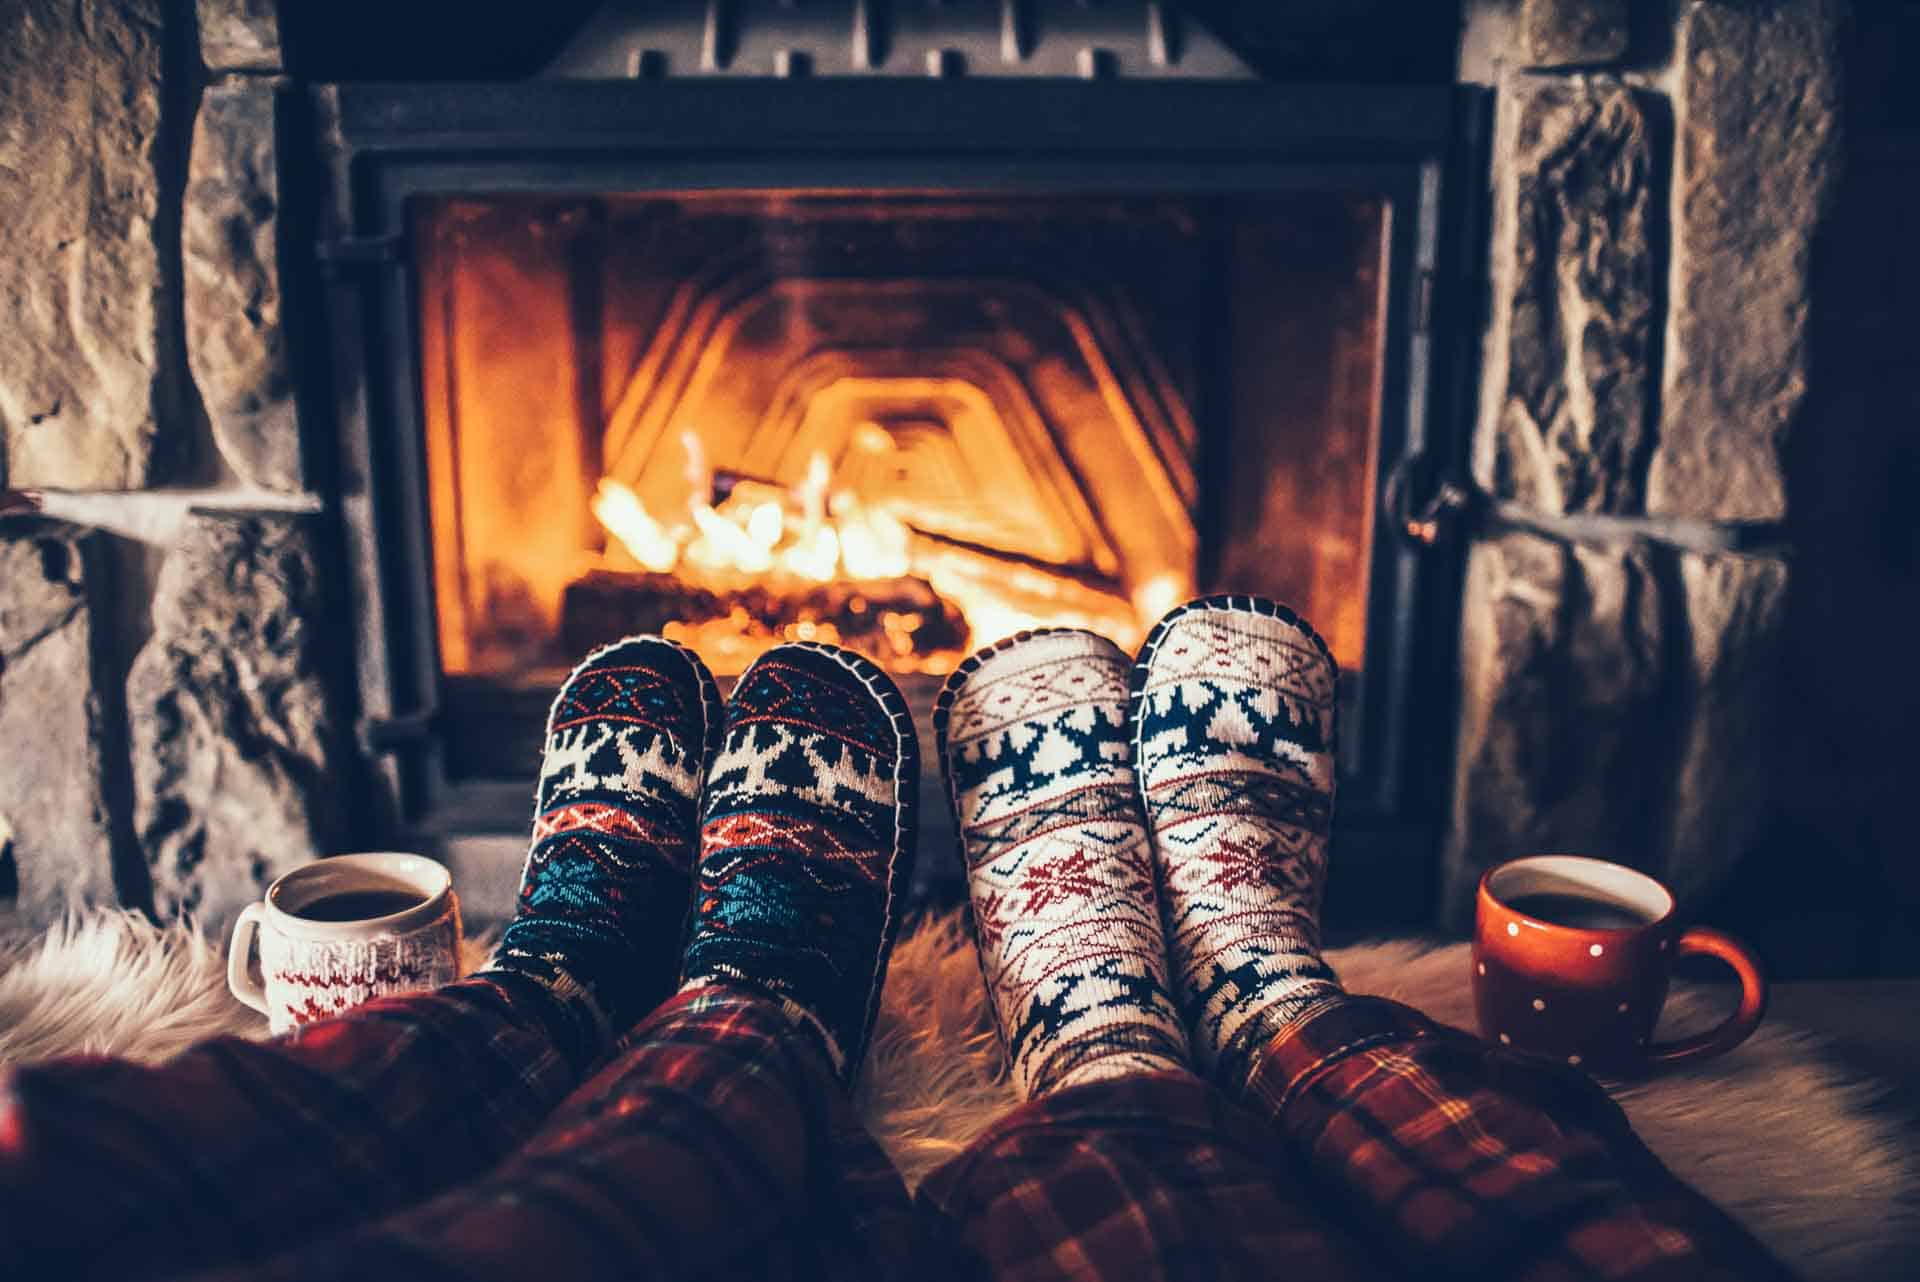 Feet in woollen socks by the Christmas fireplace.